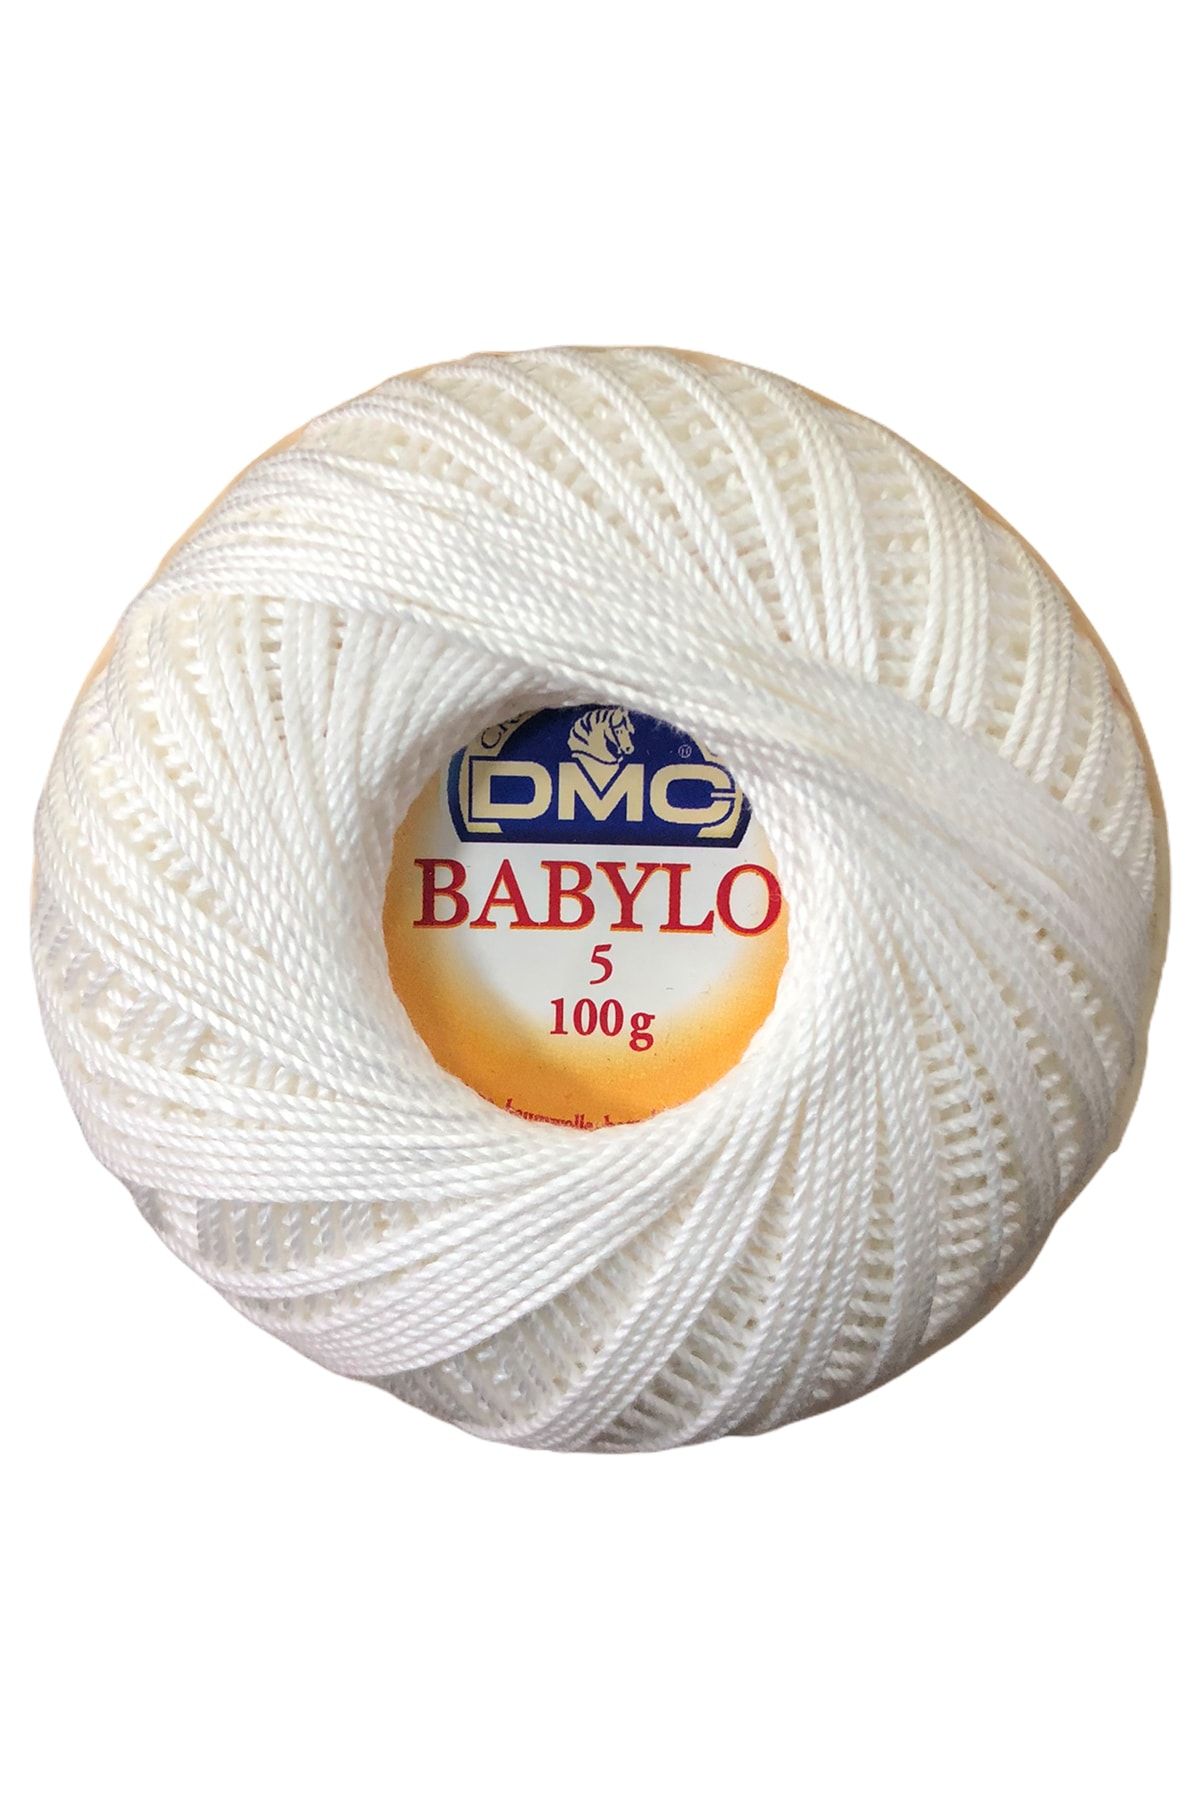 DMC Babylo Anglez Ipi 100 Gr. No: 5 Beyaz Blanc